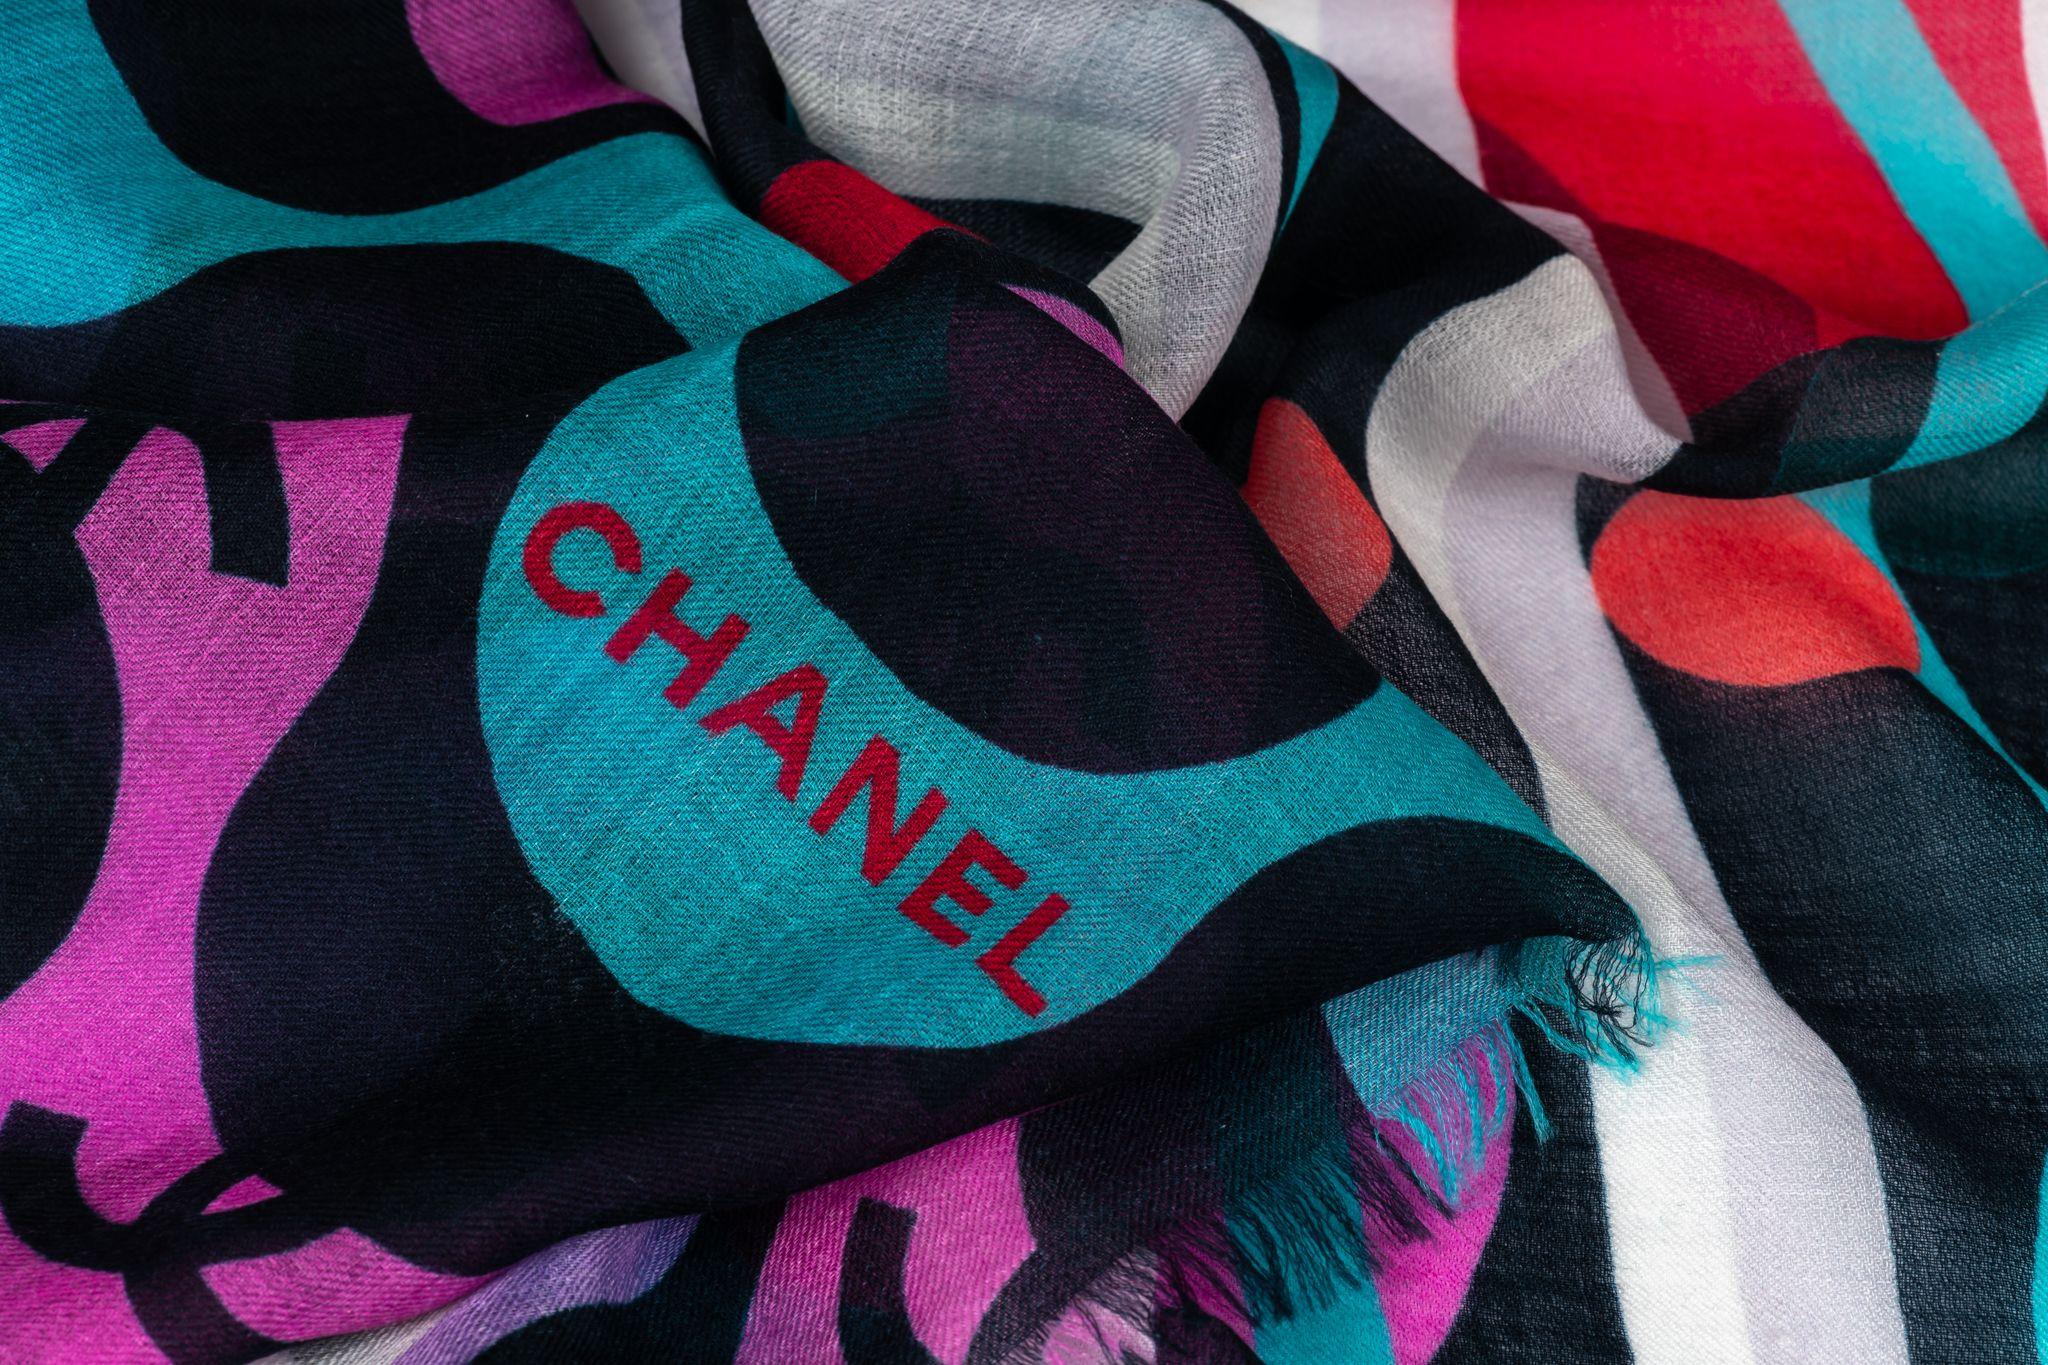 Chanel new logo cashmere shawl in multicolors . Original care tag.